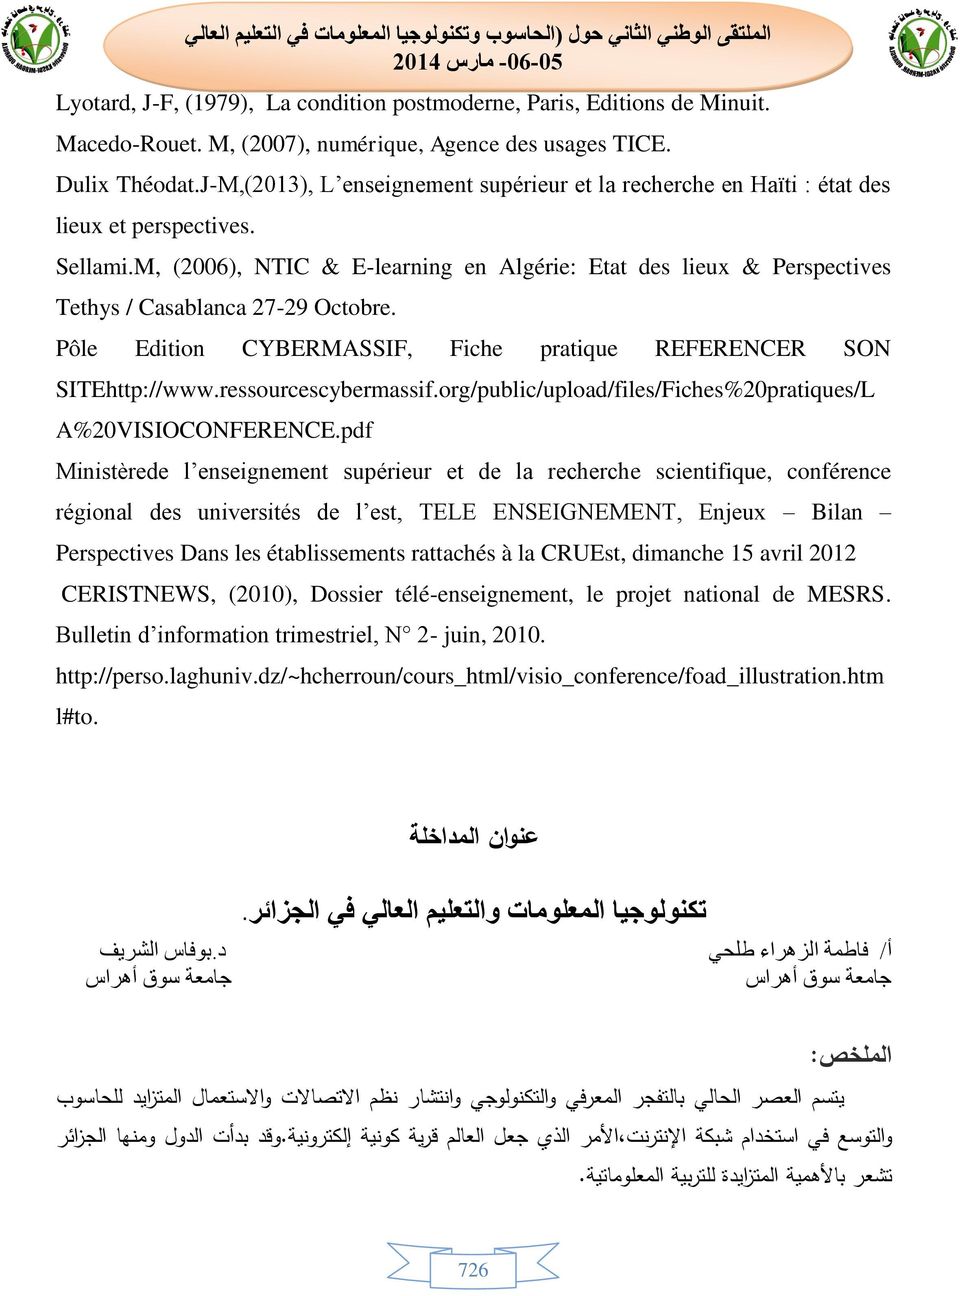 M, (2006), NTIC & E-learning en Algérie: Etat des lieux & Perspectives Tethys / Casablanca 27-29 Octobre. Pôle Edition CYBERMASSIF, Fiche pratique REFERENCER SON SITEhttp://www.ressourcescybermassif.